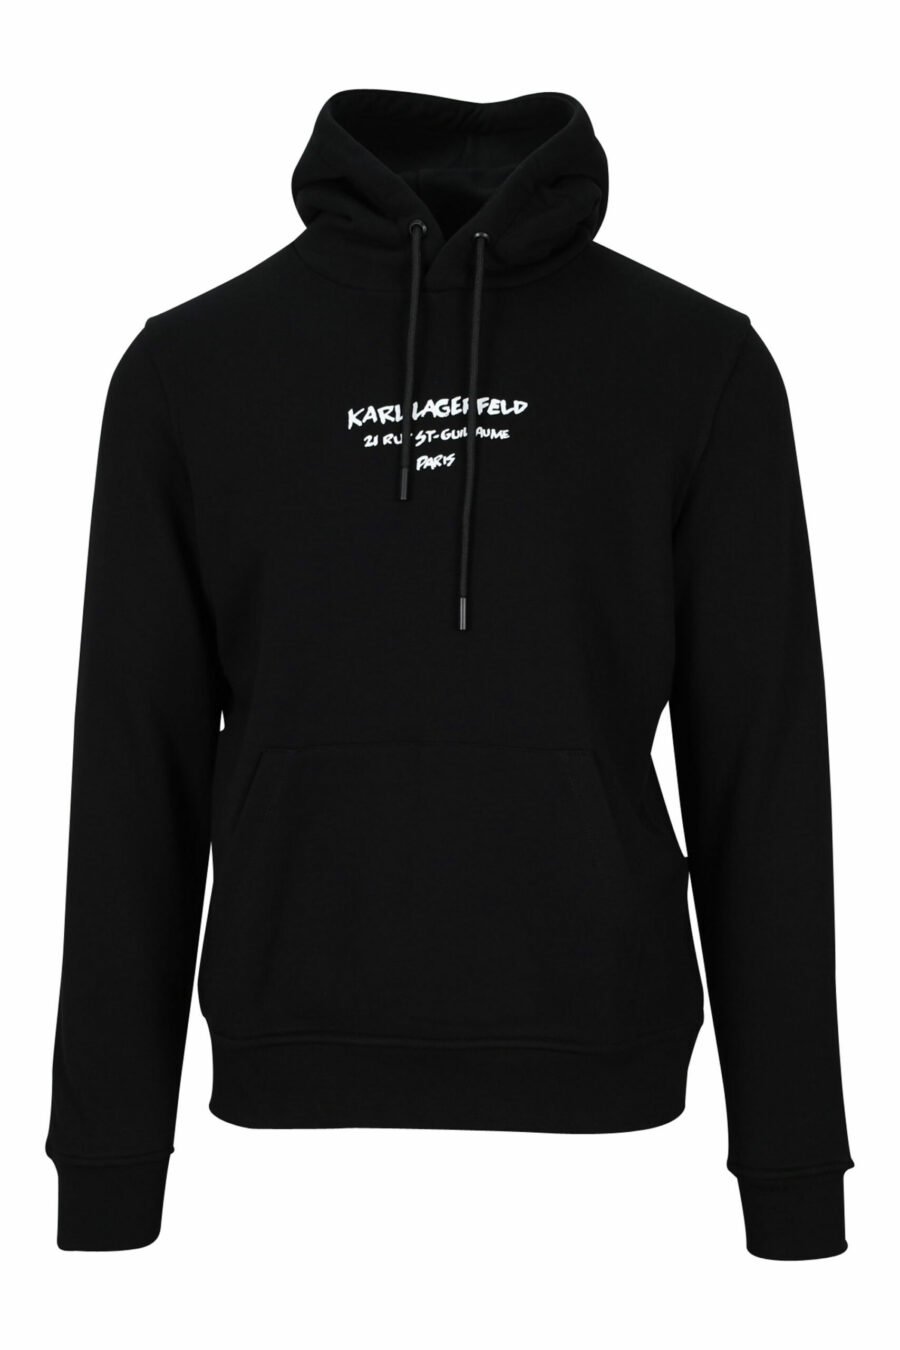 Schwarzes Kapuzensweatshirt mit "rue st guillaume" Logo - 4062226395977 skaliert